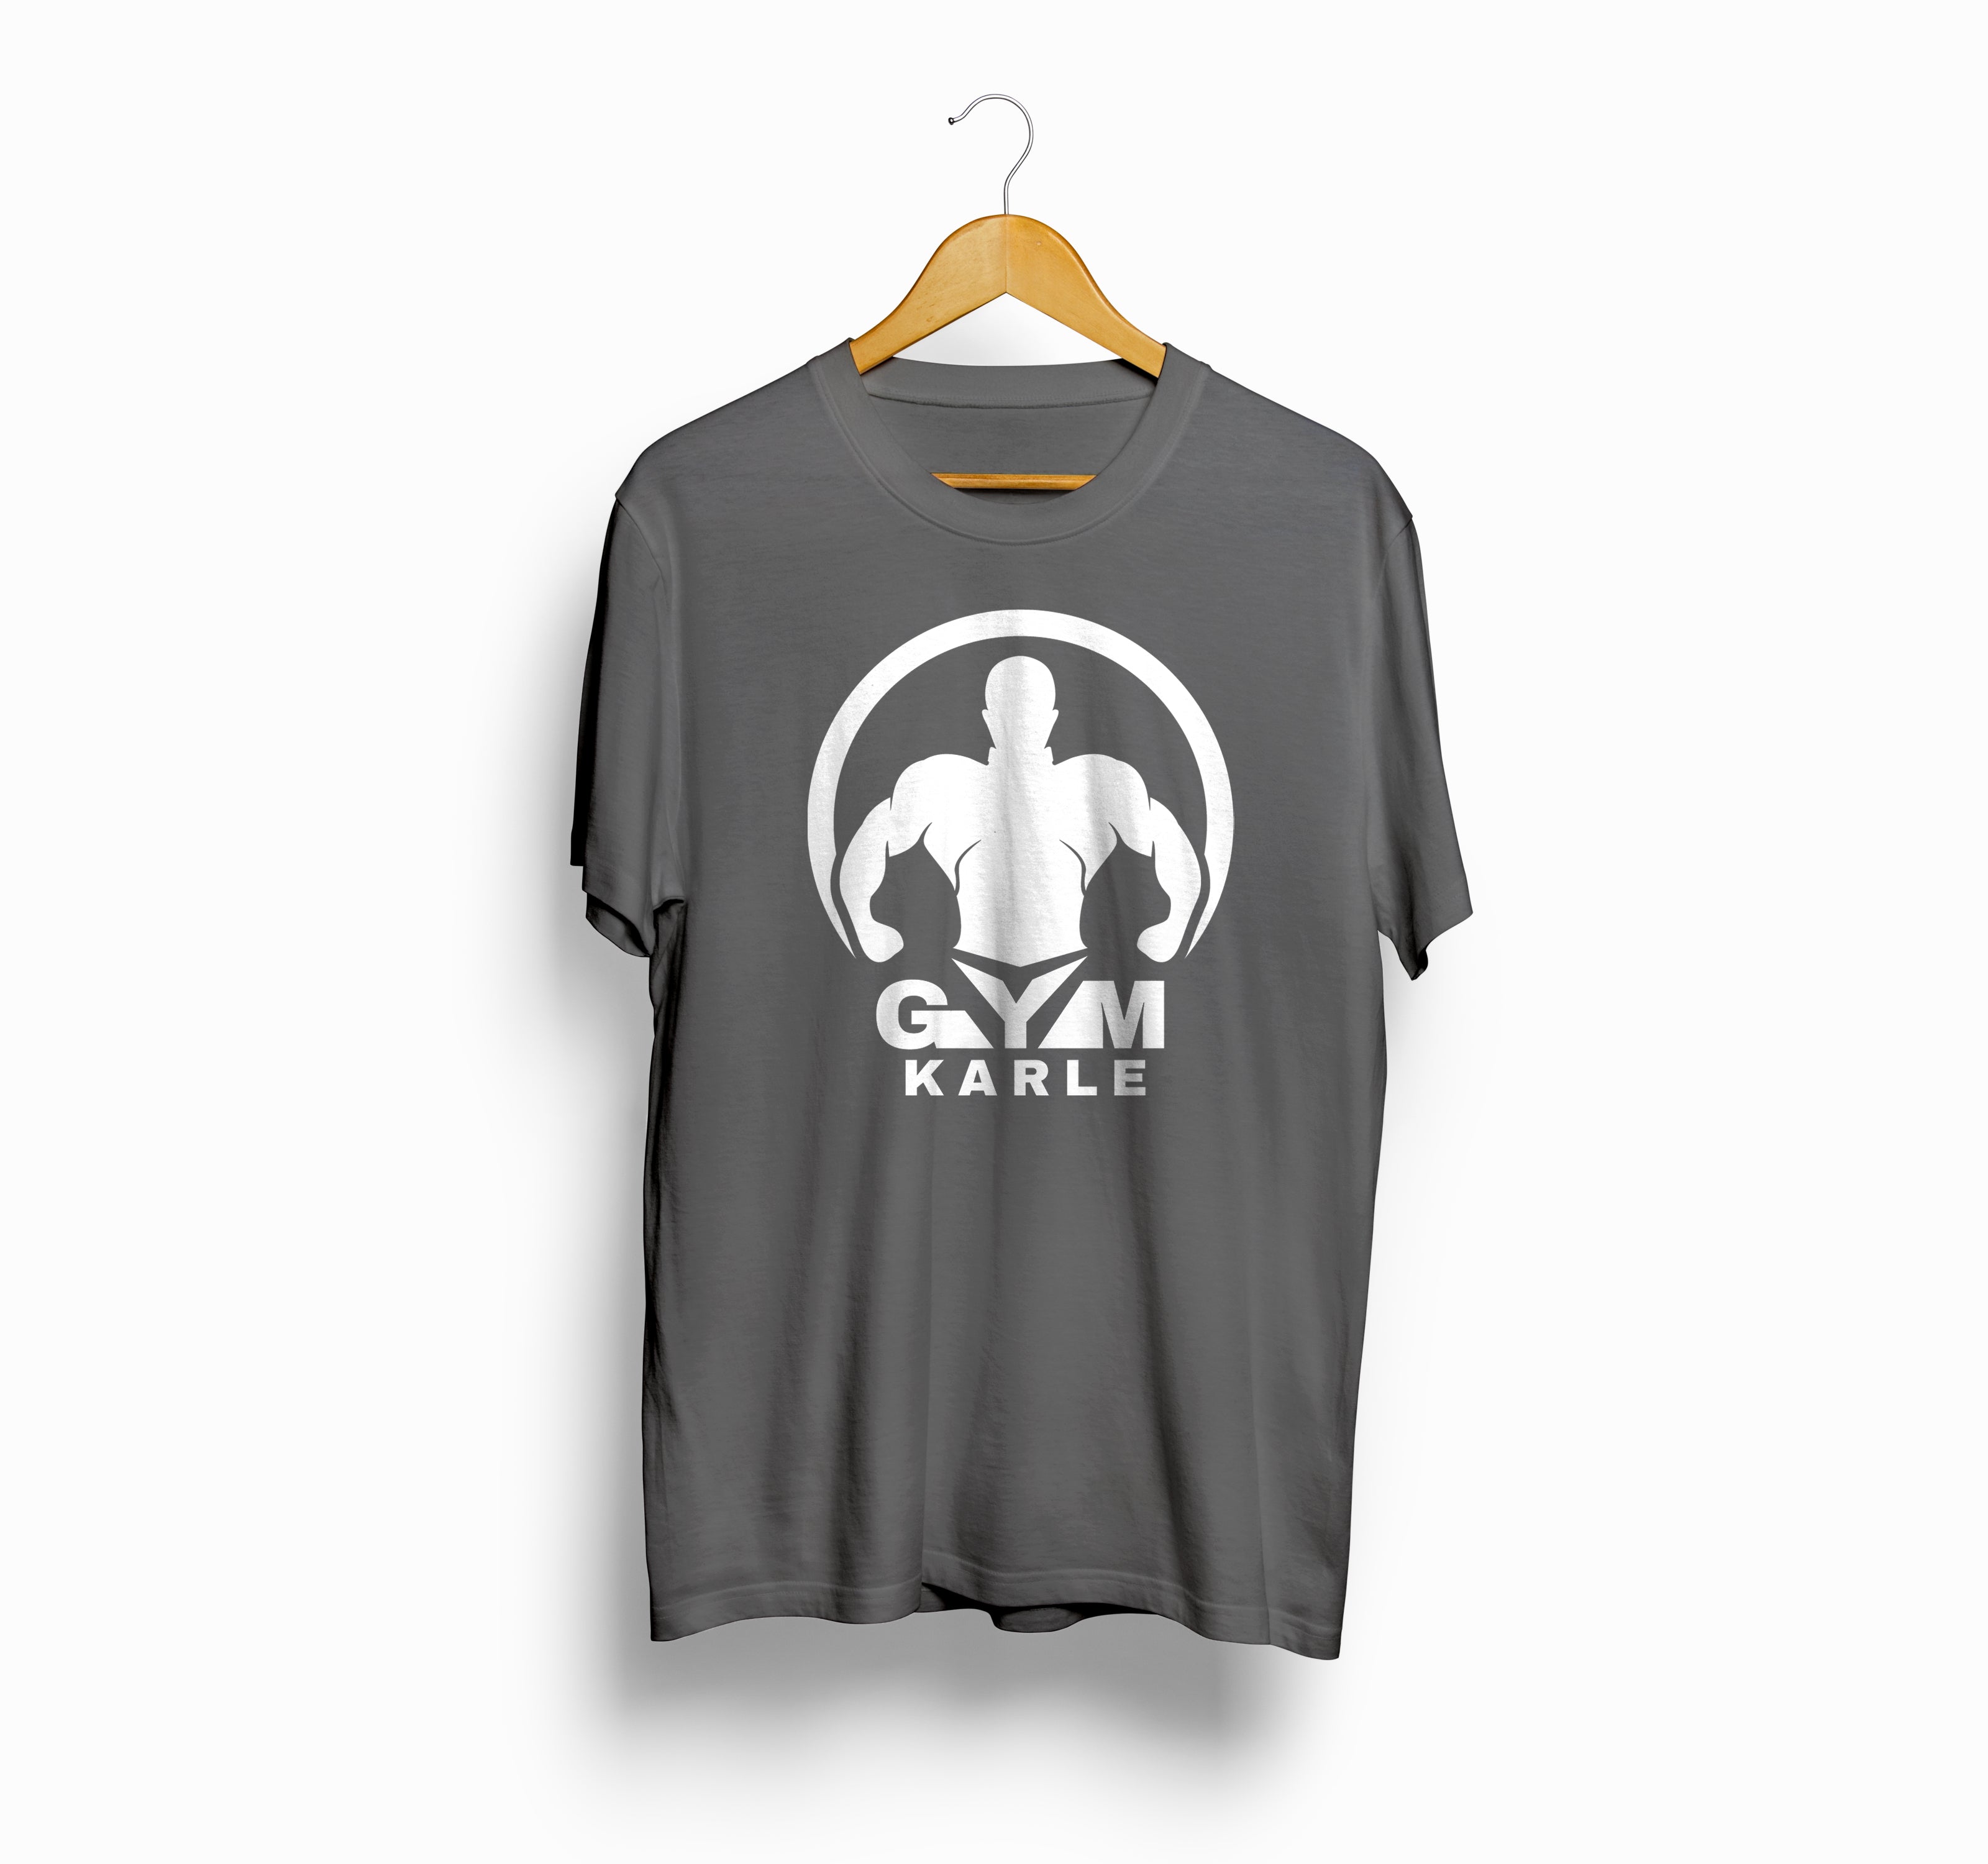 Bizzar's Gym Karle Charcoal Melange T-Shirt